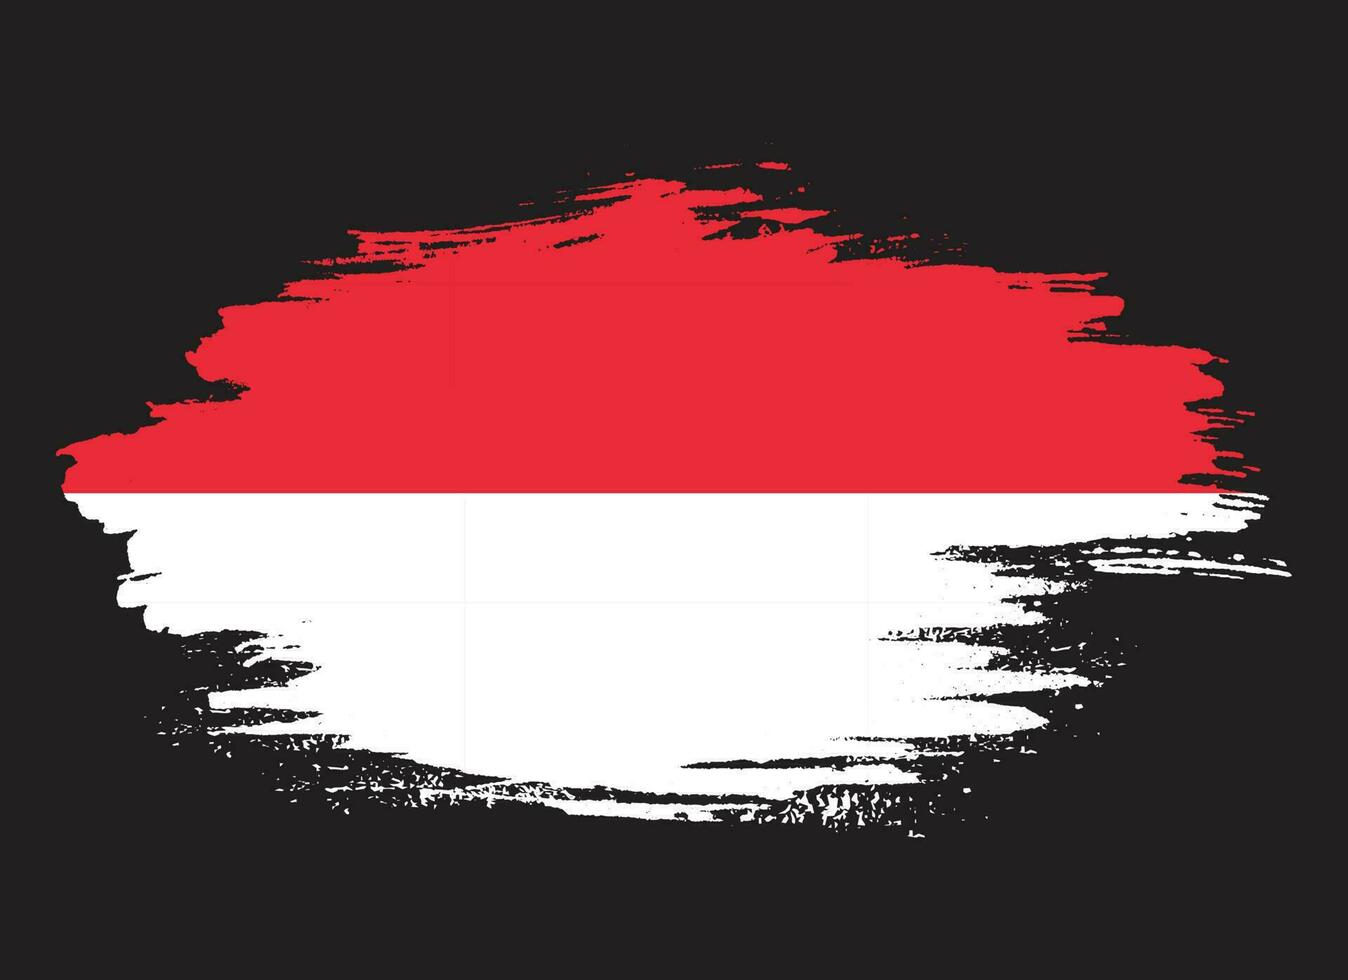 tjock borsta stroke indonesien flagga vektor